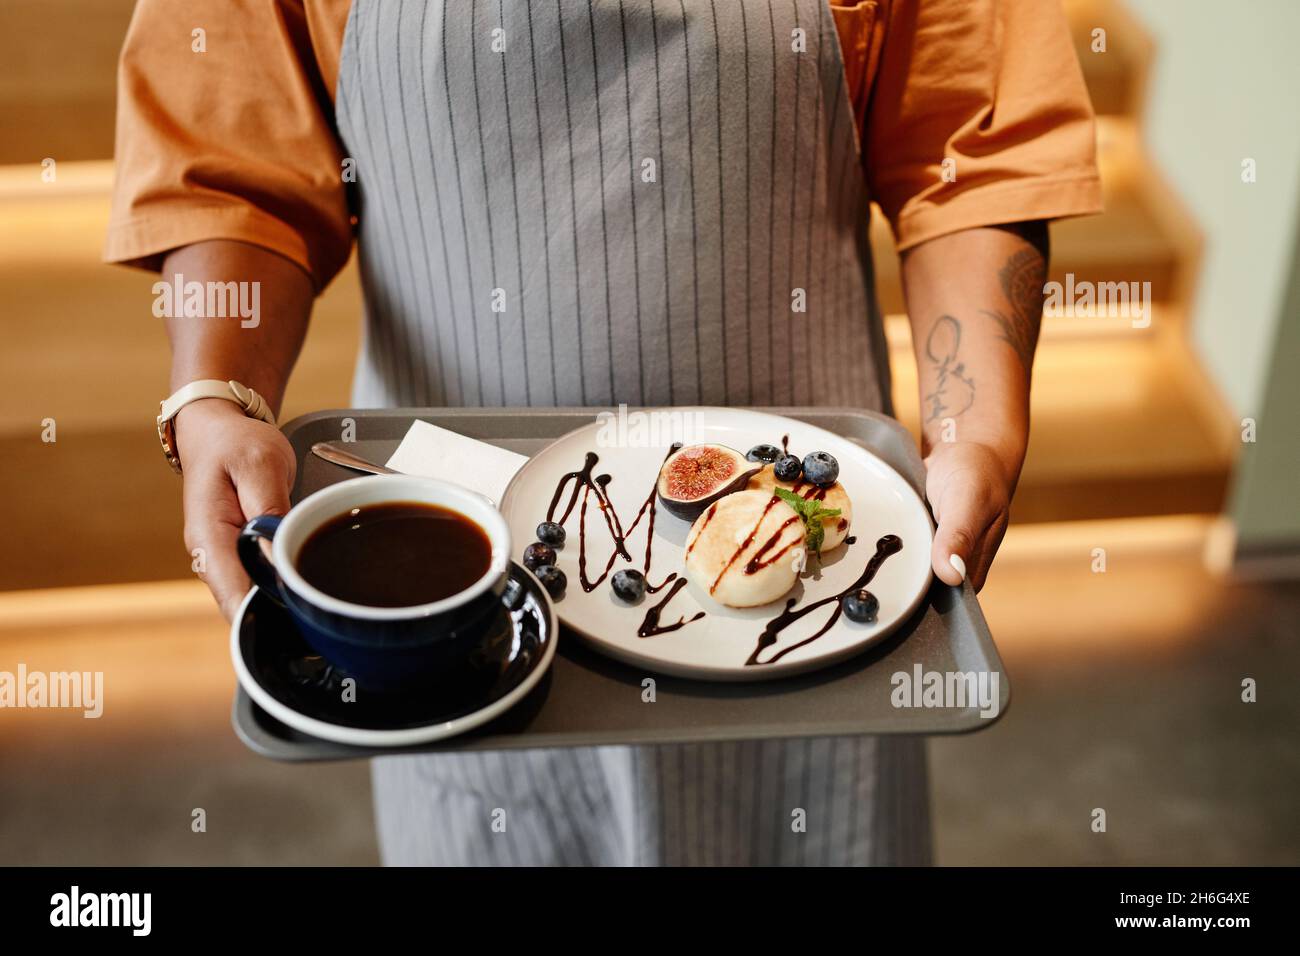 Vue horizontale en grand angle d'une serveuse non reconnaissable travaillant dans un café apportant café et dessert au client Banque D'Images